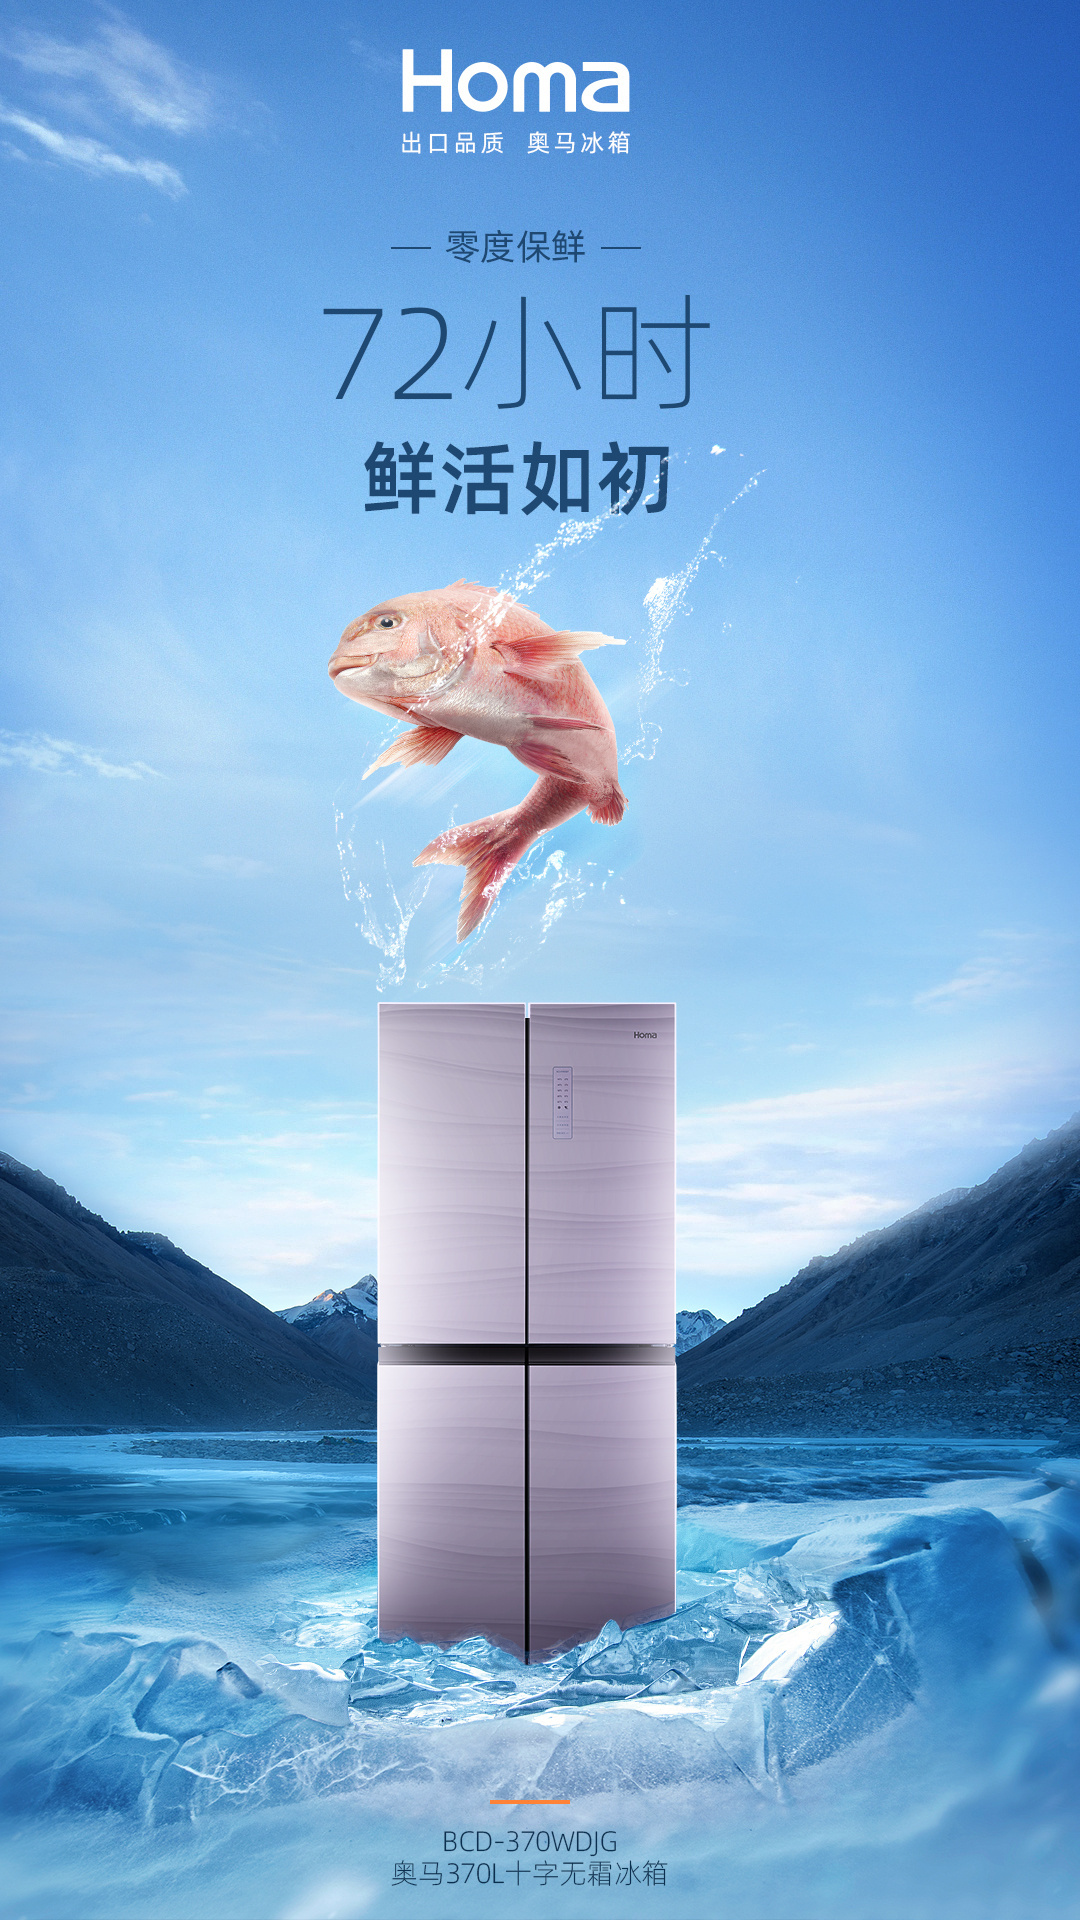 奧馬冰箱370升新品上市賣點宣傳推廣系列海報設計圖0